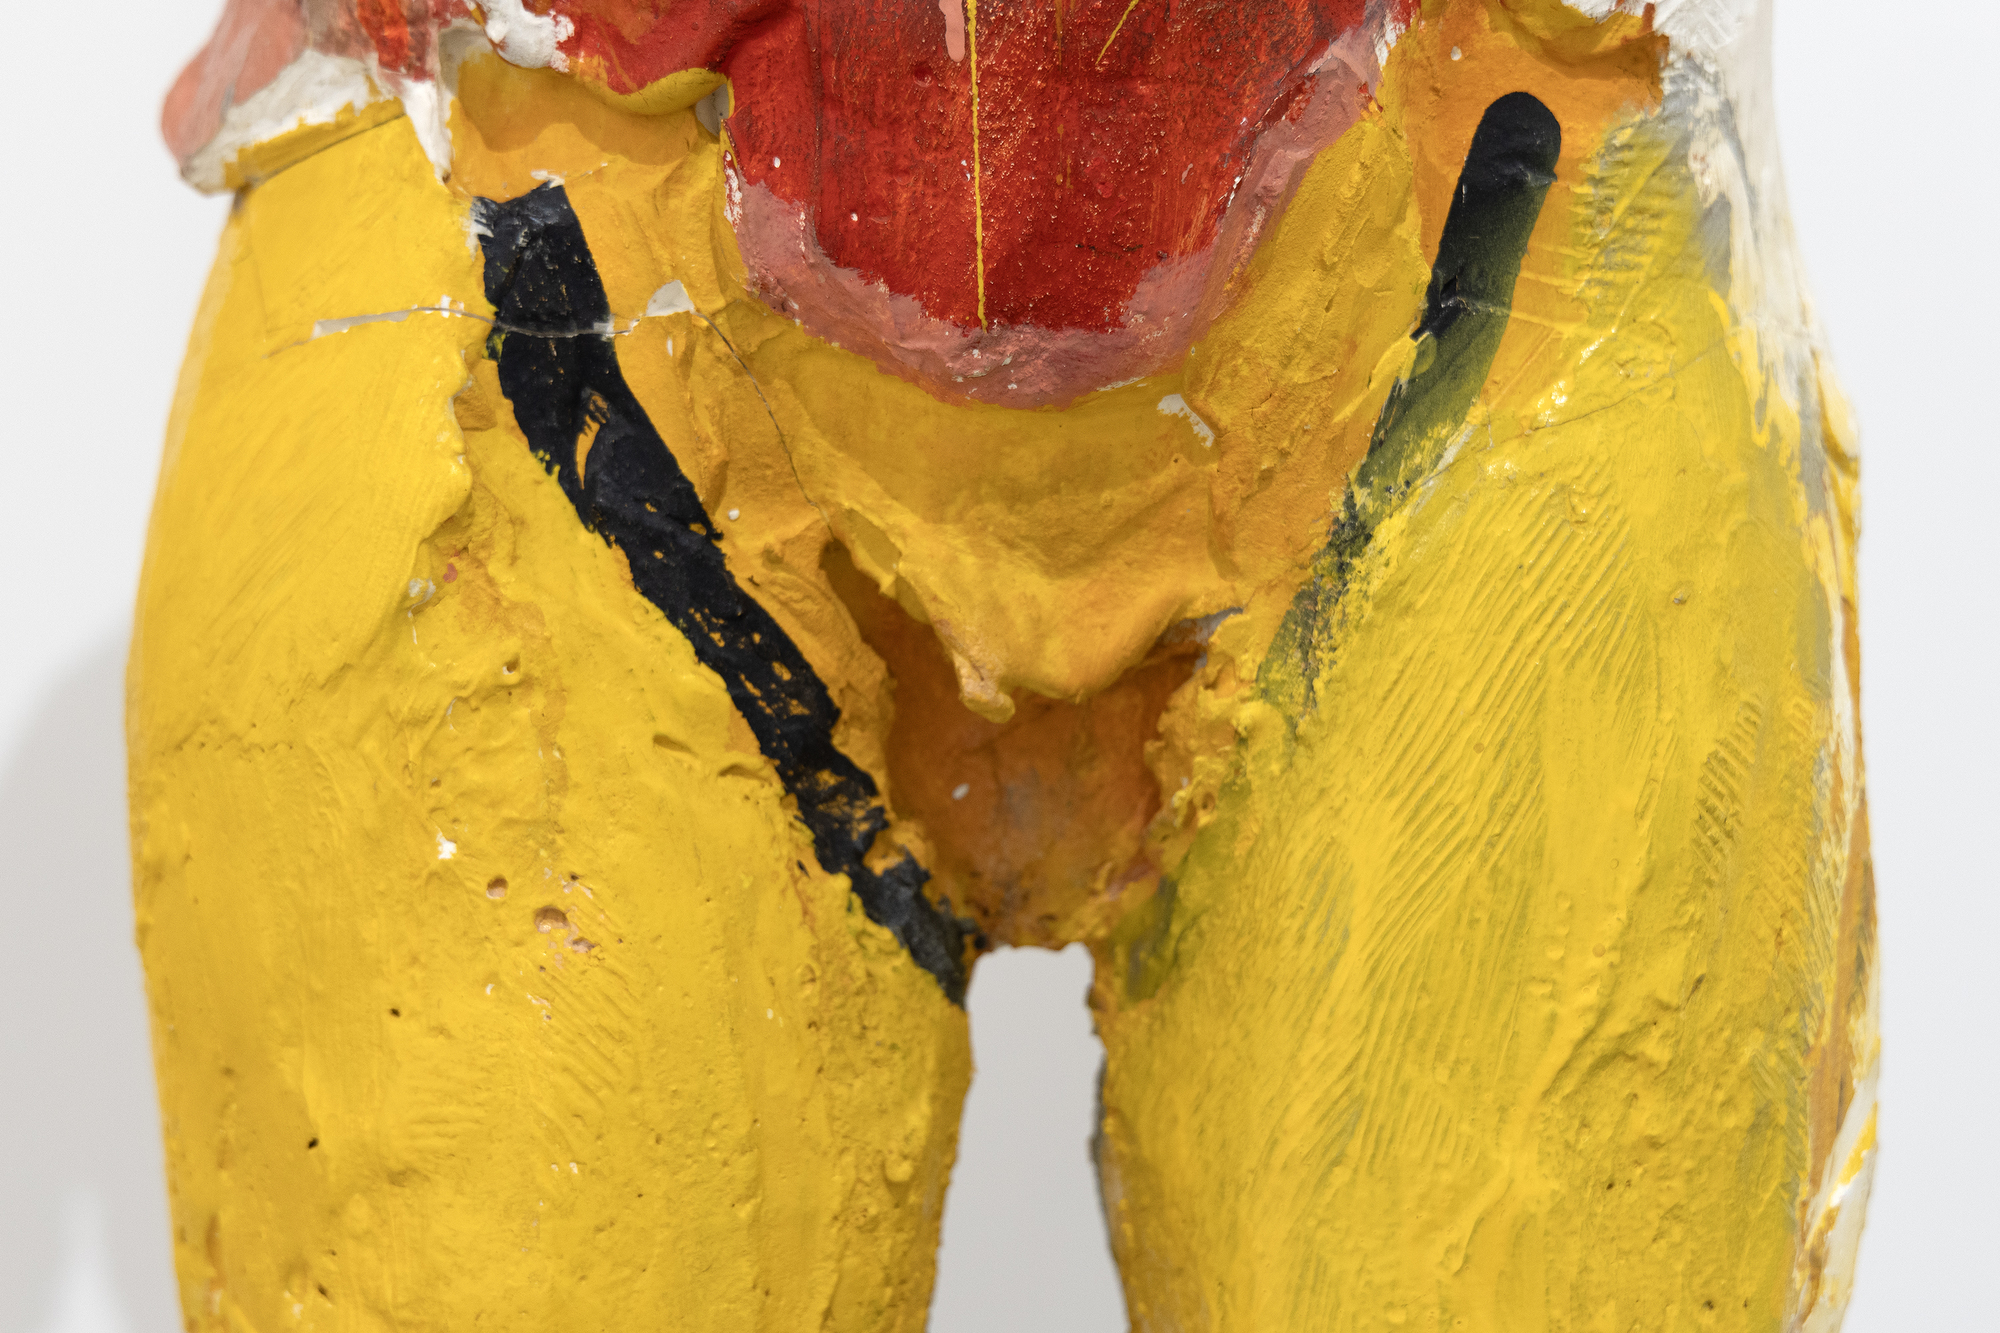 עבודות הנייר המוקדמות של מנואל נרי פרצו דרך בטכניקה פיסולית, וגישתו לציור פסליו משקפת את עיסוקו העמוק בפוטנציאל האקספרסיבי של צבע וצורה. הבחירה והמיקום של הצבעים בהומברה קולורדו II יוצרים תגובה קרבית במיוחד המשקפת את הבנתו רבת הניואנסים את הממד הפסיכולוגי והרגשי של הצבע. הומברה קולורדו השני, שתוכנן והופק בשנת 1958, משקף תקופה שבה נרי ואשתו ג&#039;ואן בראון עסקו בחילופי יצירתיות אמנותיים עשירים ותרמו באופן משמעותי להתפתחות הסגנונות שלהם והתנועה הפיגורטיבית של אזור המפרץ, שבה מילאו תפקידים חיוניים.